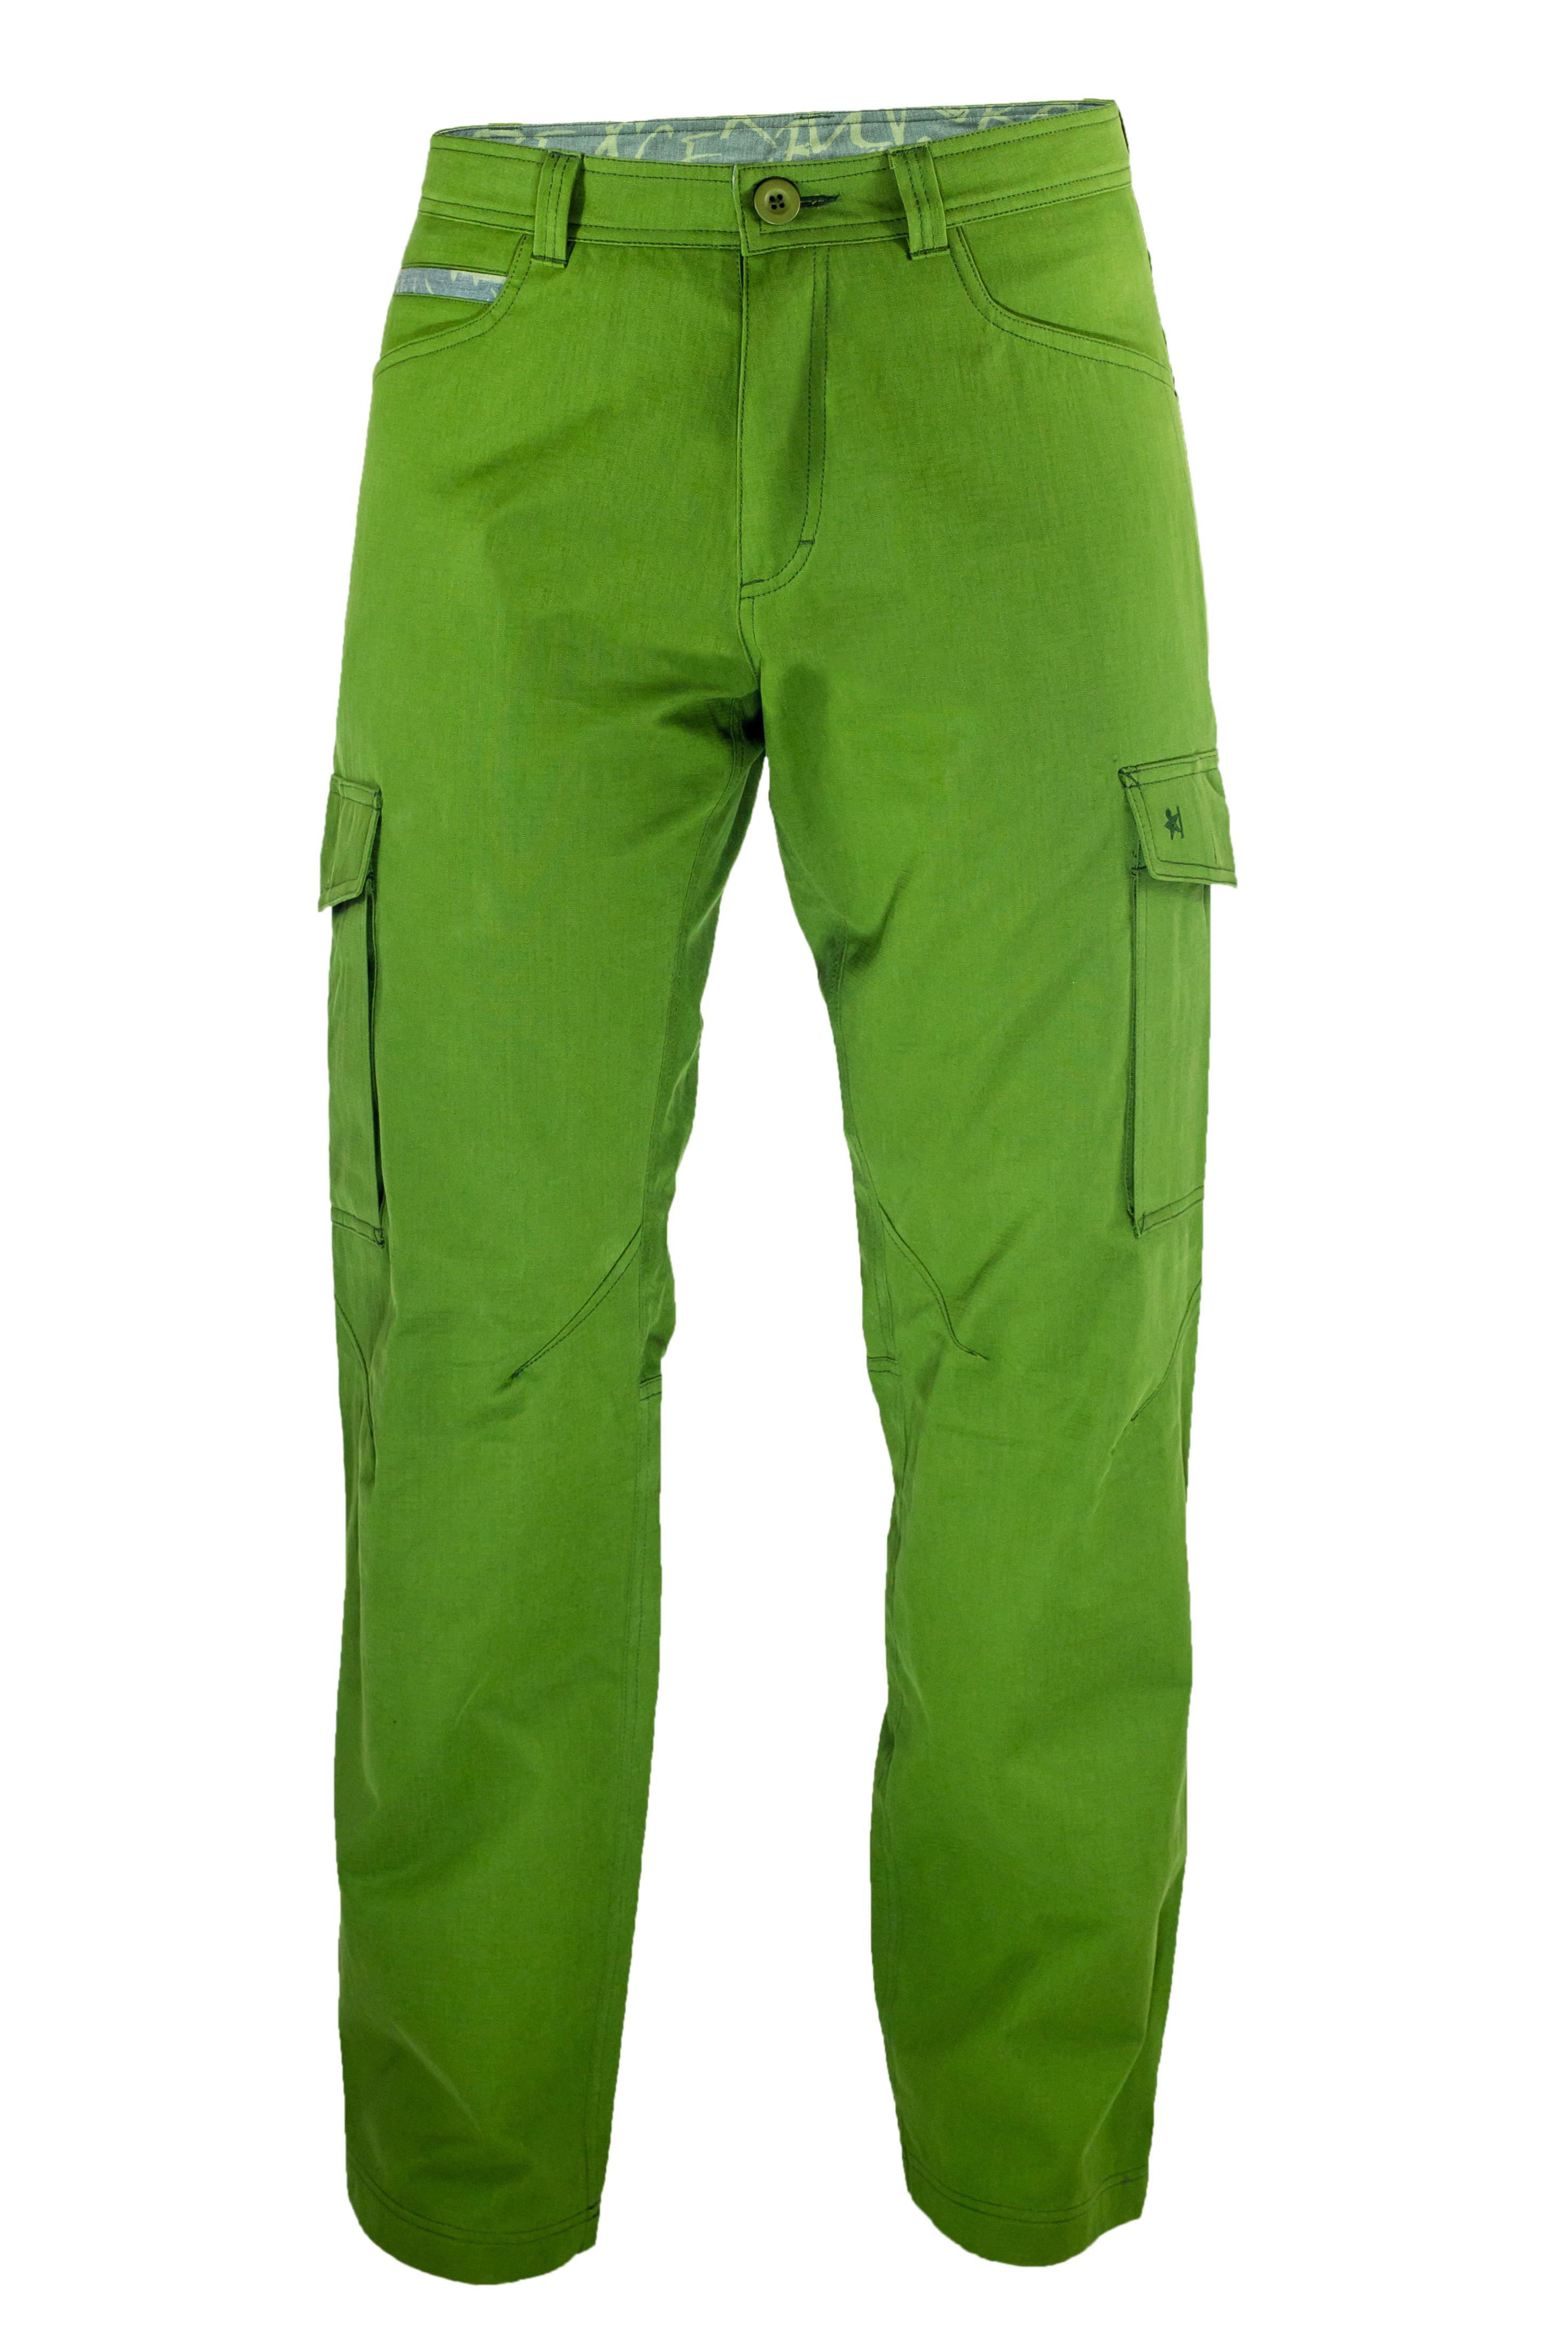 Warmpeace kalhoty Travers Barva: zelená, Velikost: M